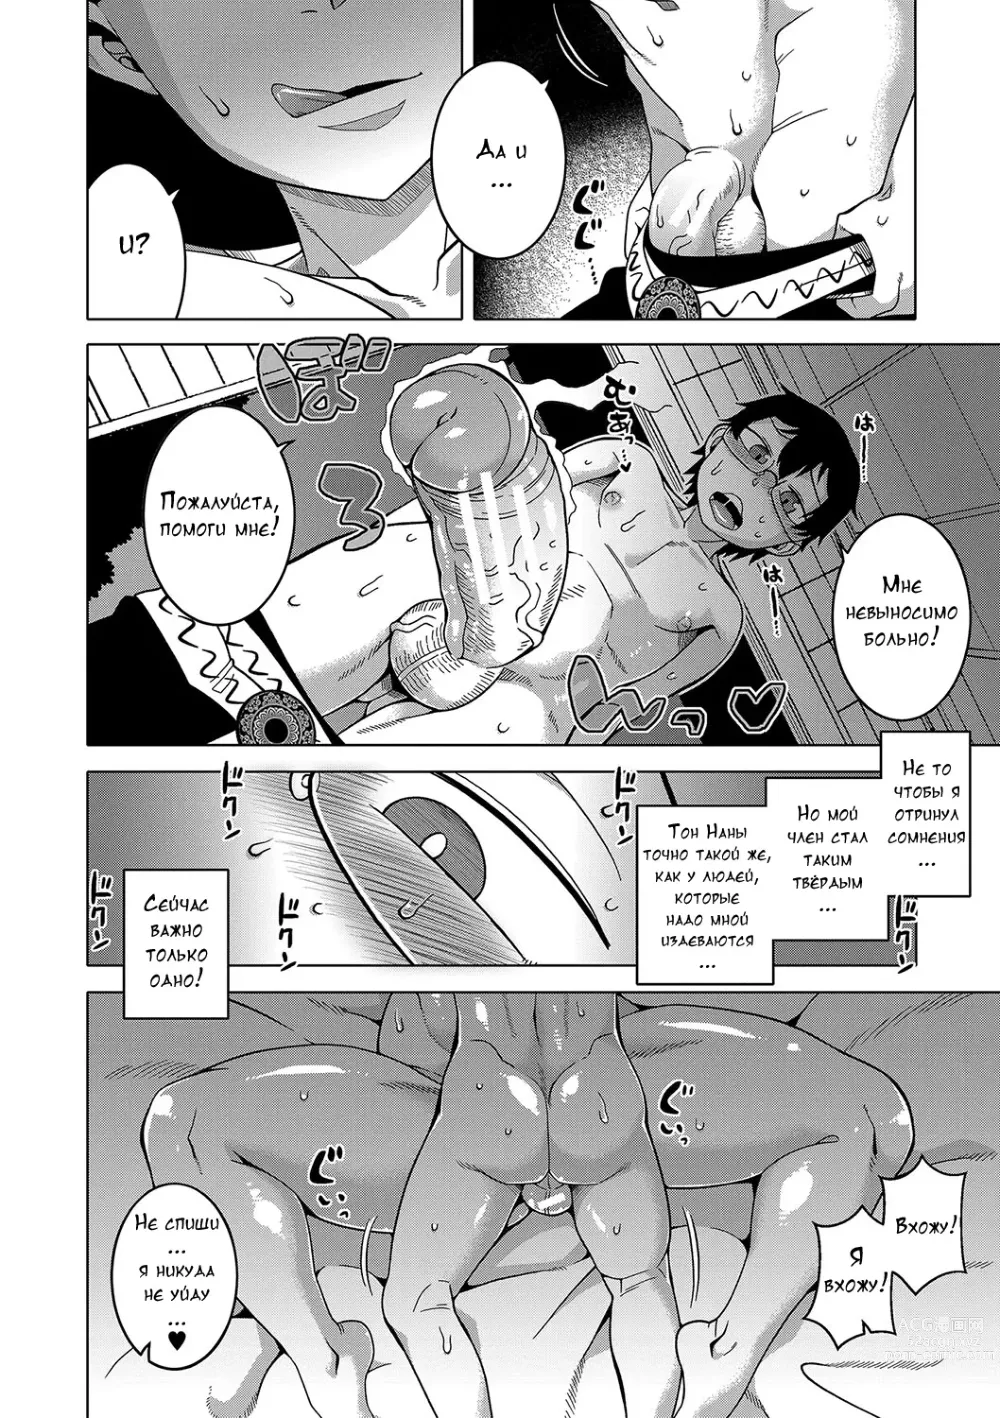 Page 32 of manga Kami-sama no Tsukurikata